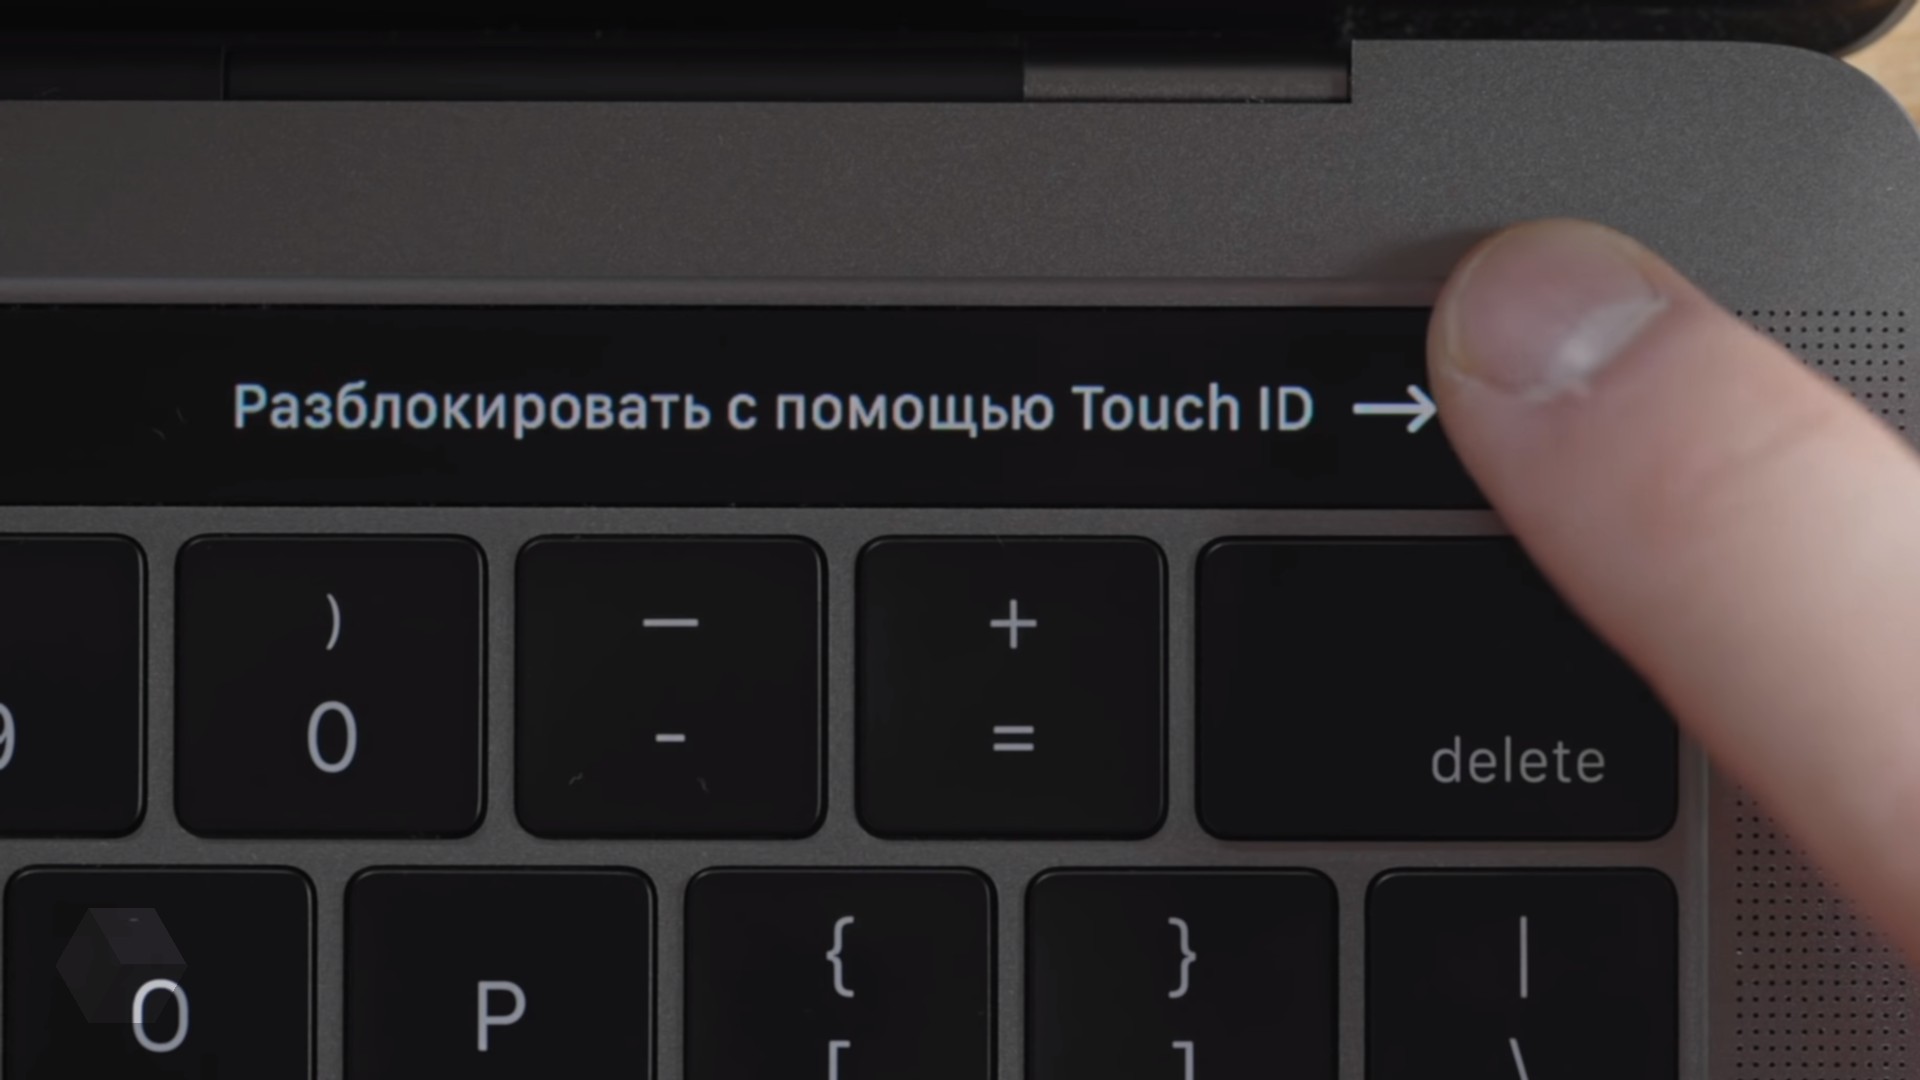 Автозаполнение паролей в Safari научилось работать с Touch ID